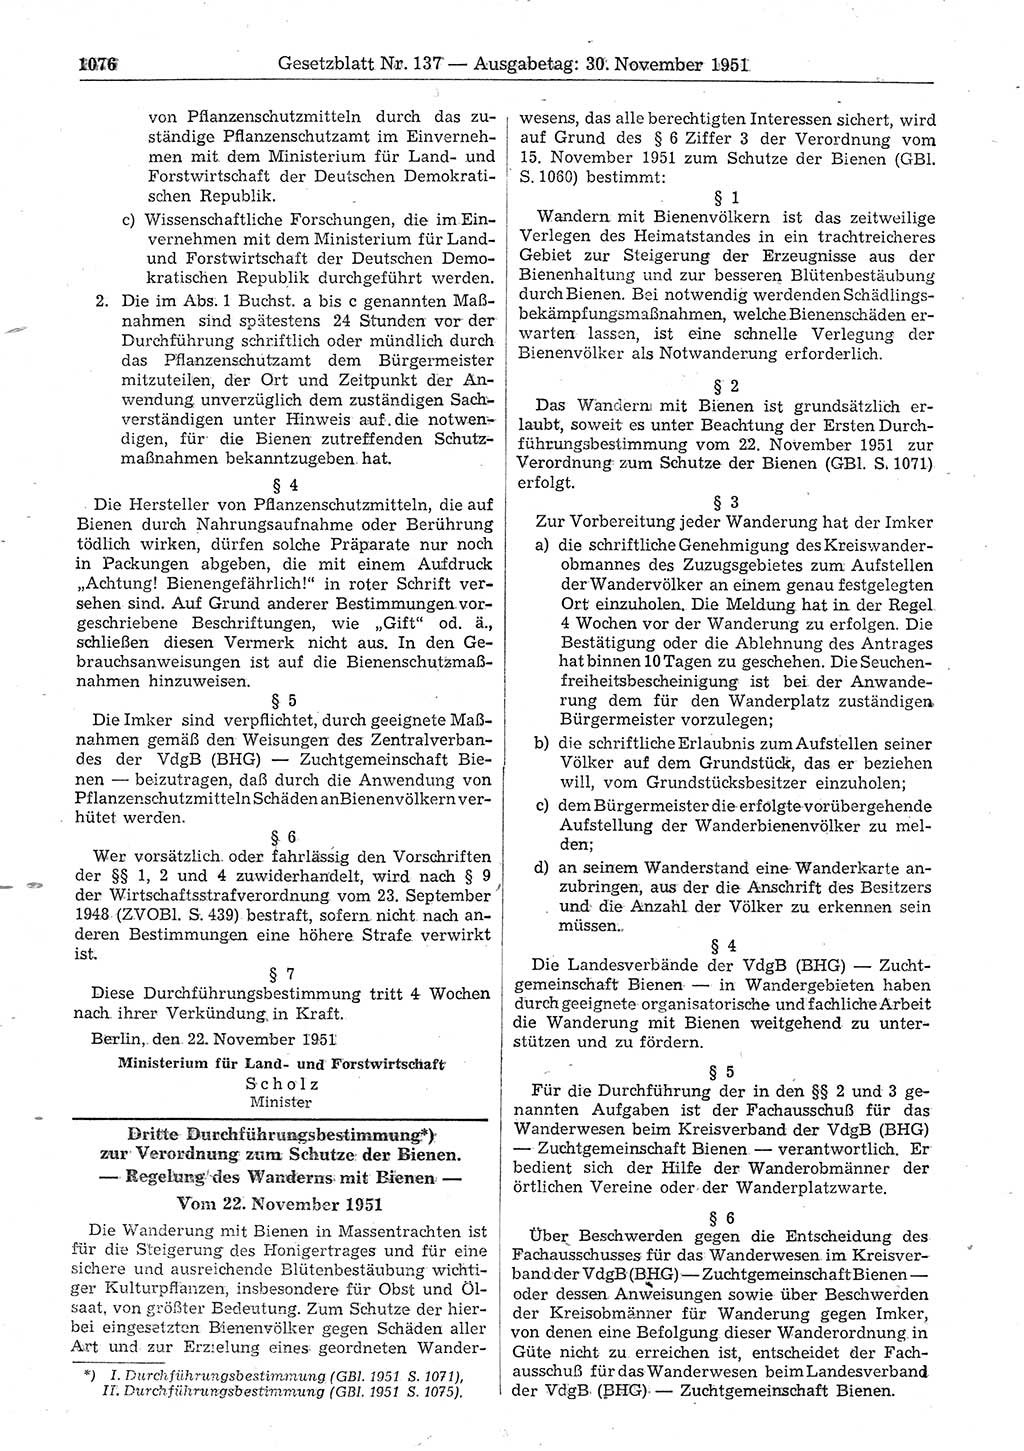 Gesetzblatt (GBl.) der Deutschen Demokratischen Republik (DDR) 1951, Seite 1076 (GBl. DDR 1951, S. 1076)